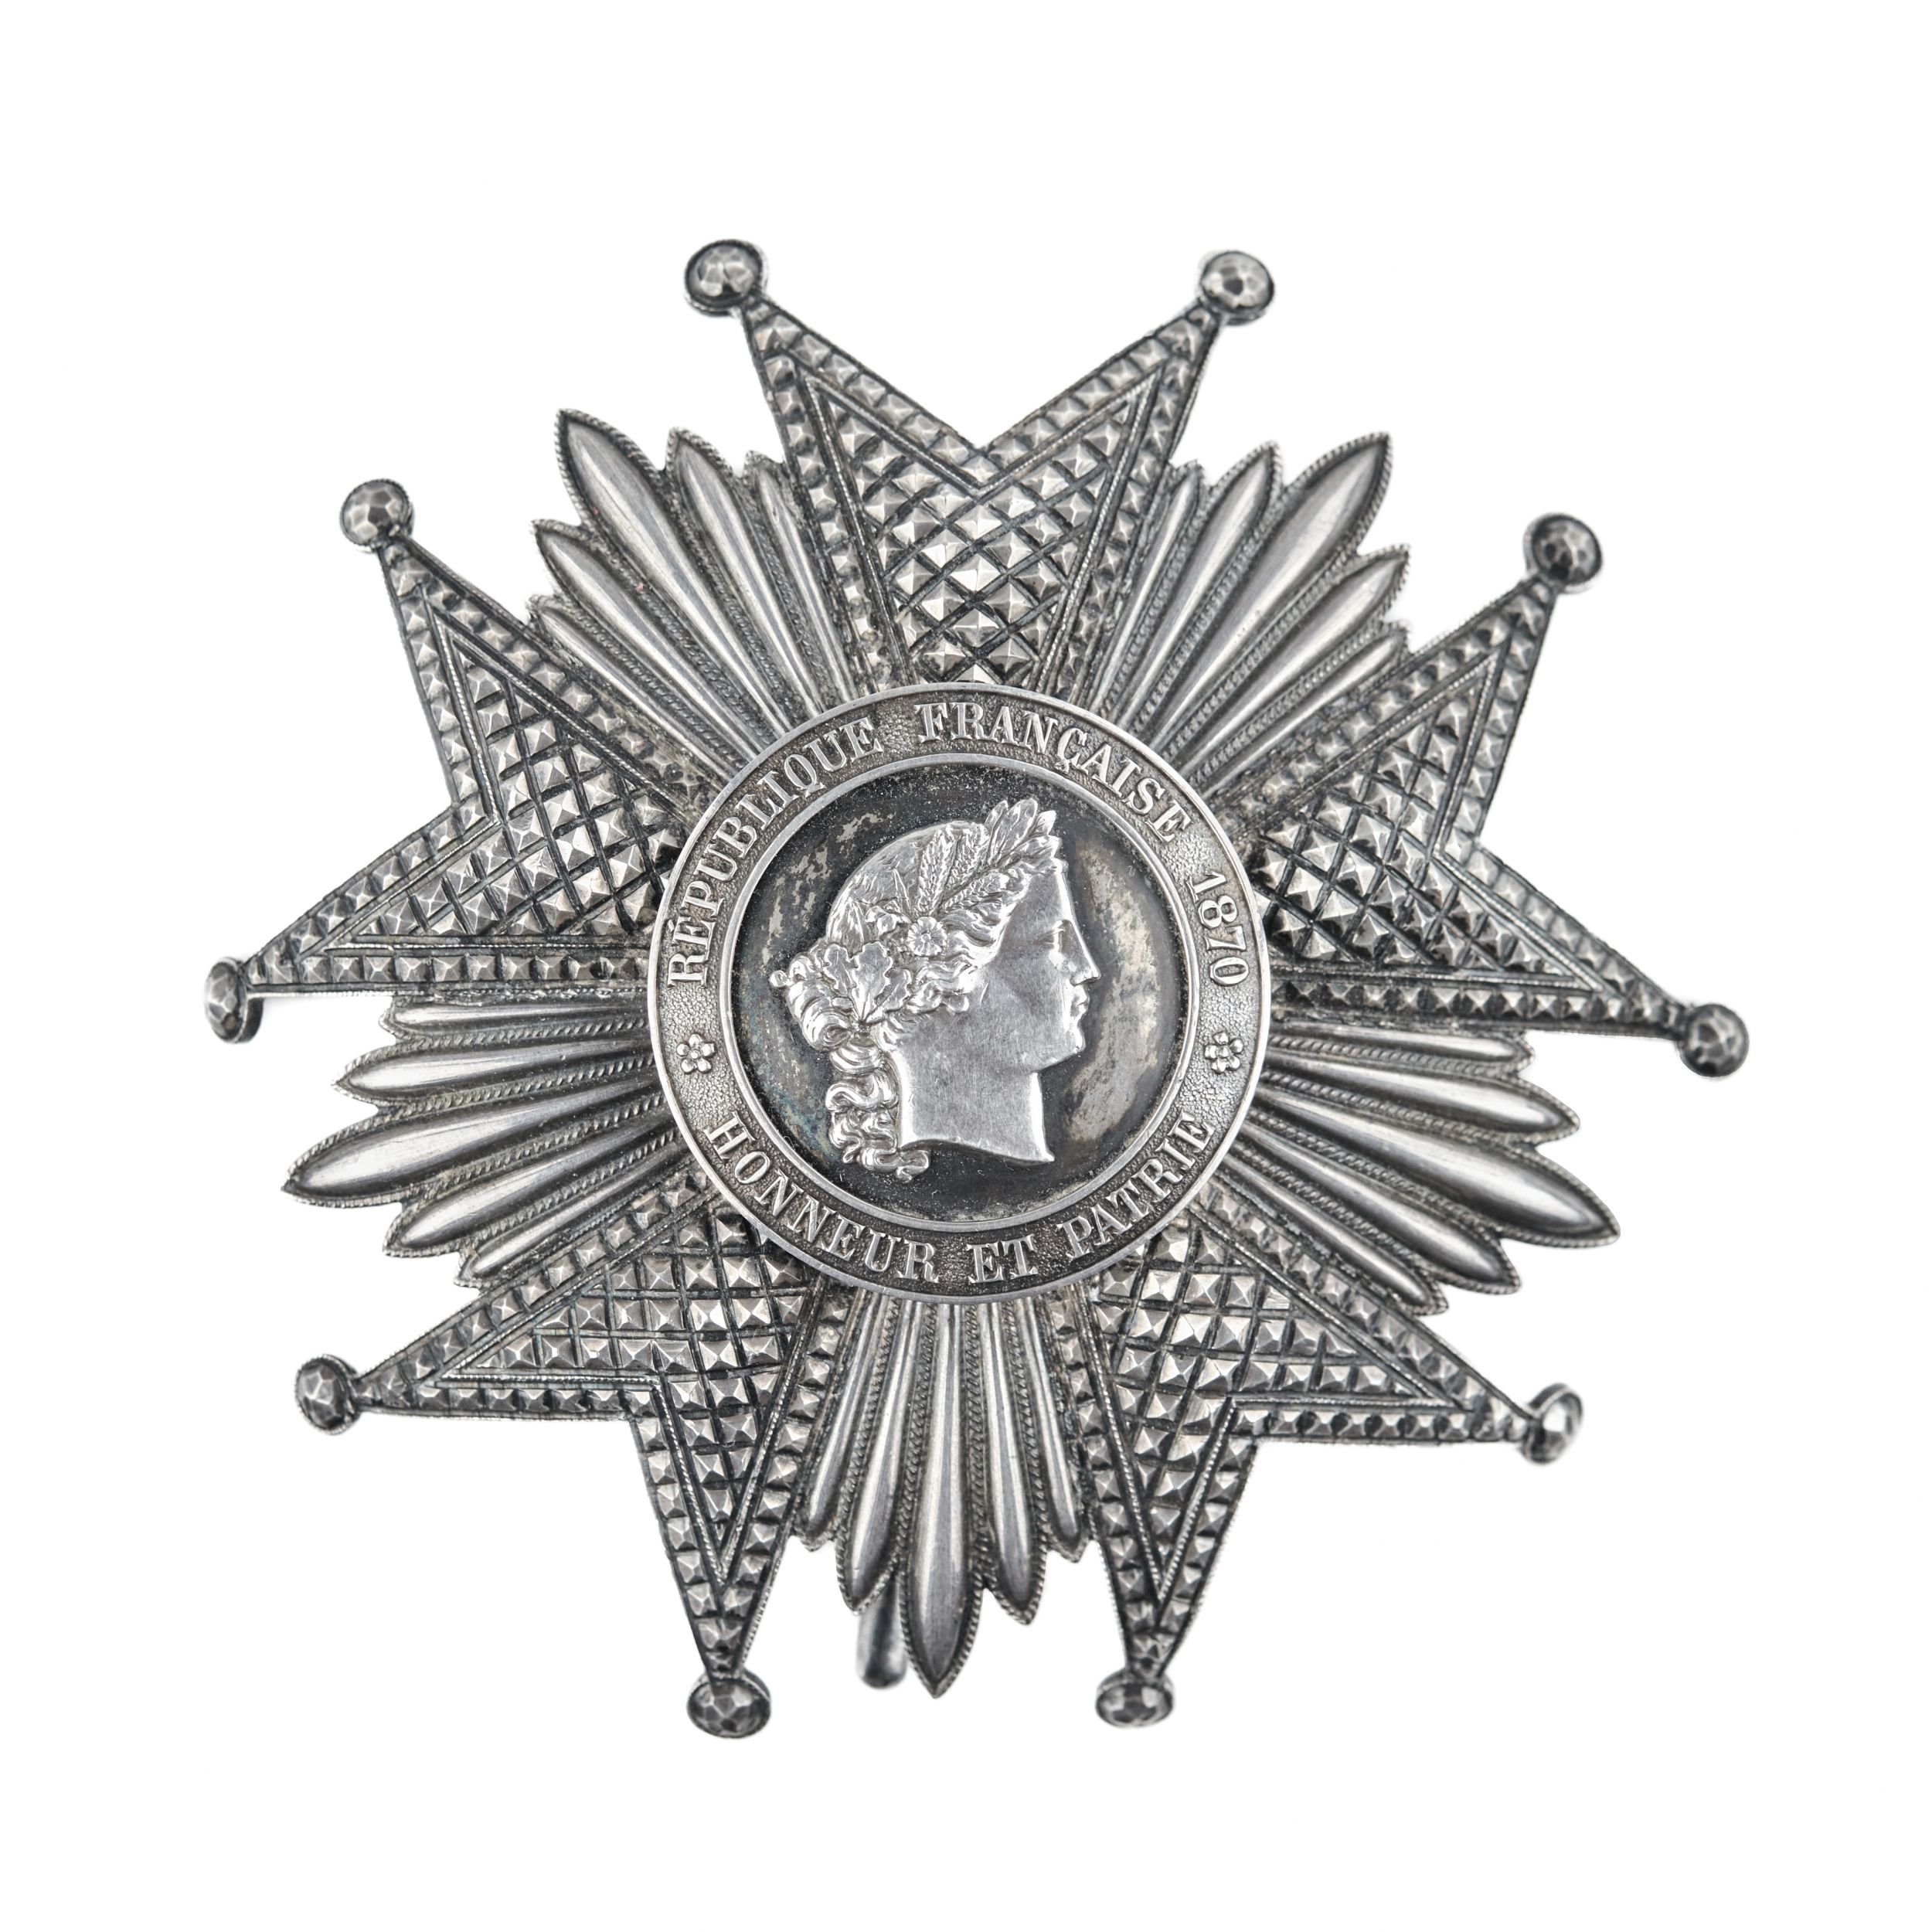 Goda-legiona-ordenis-2-skiras-Légion-DHonneur